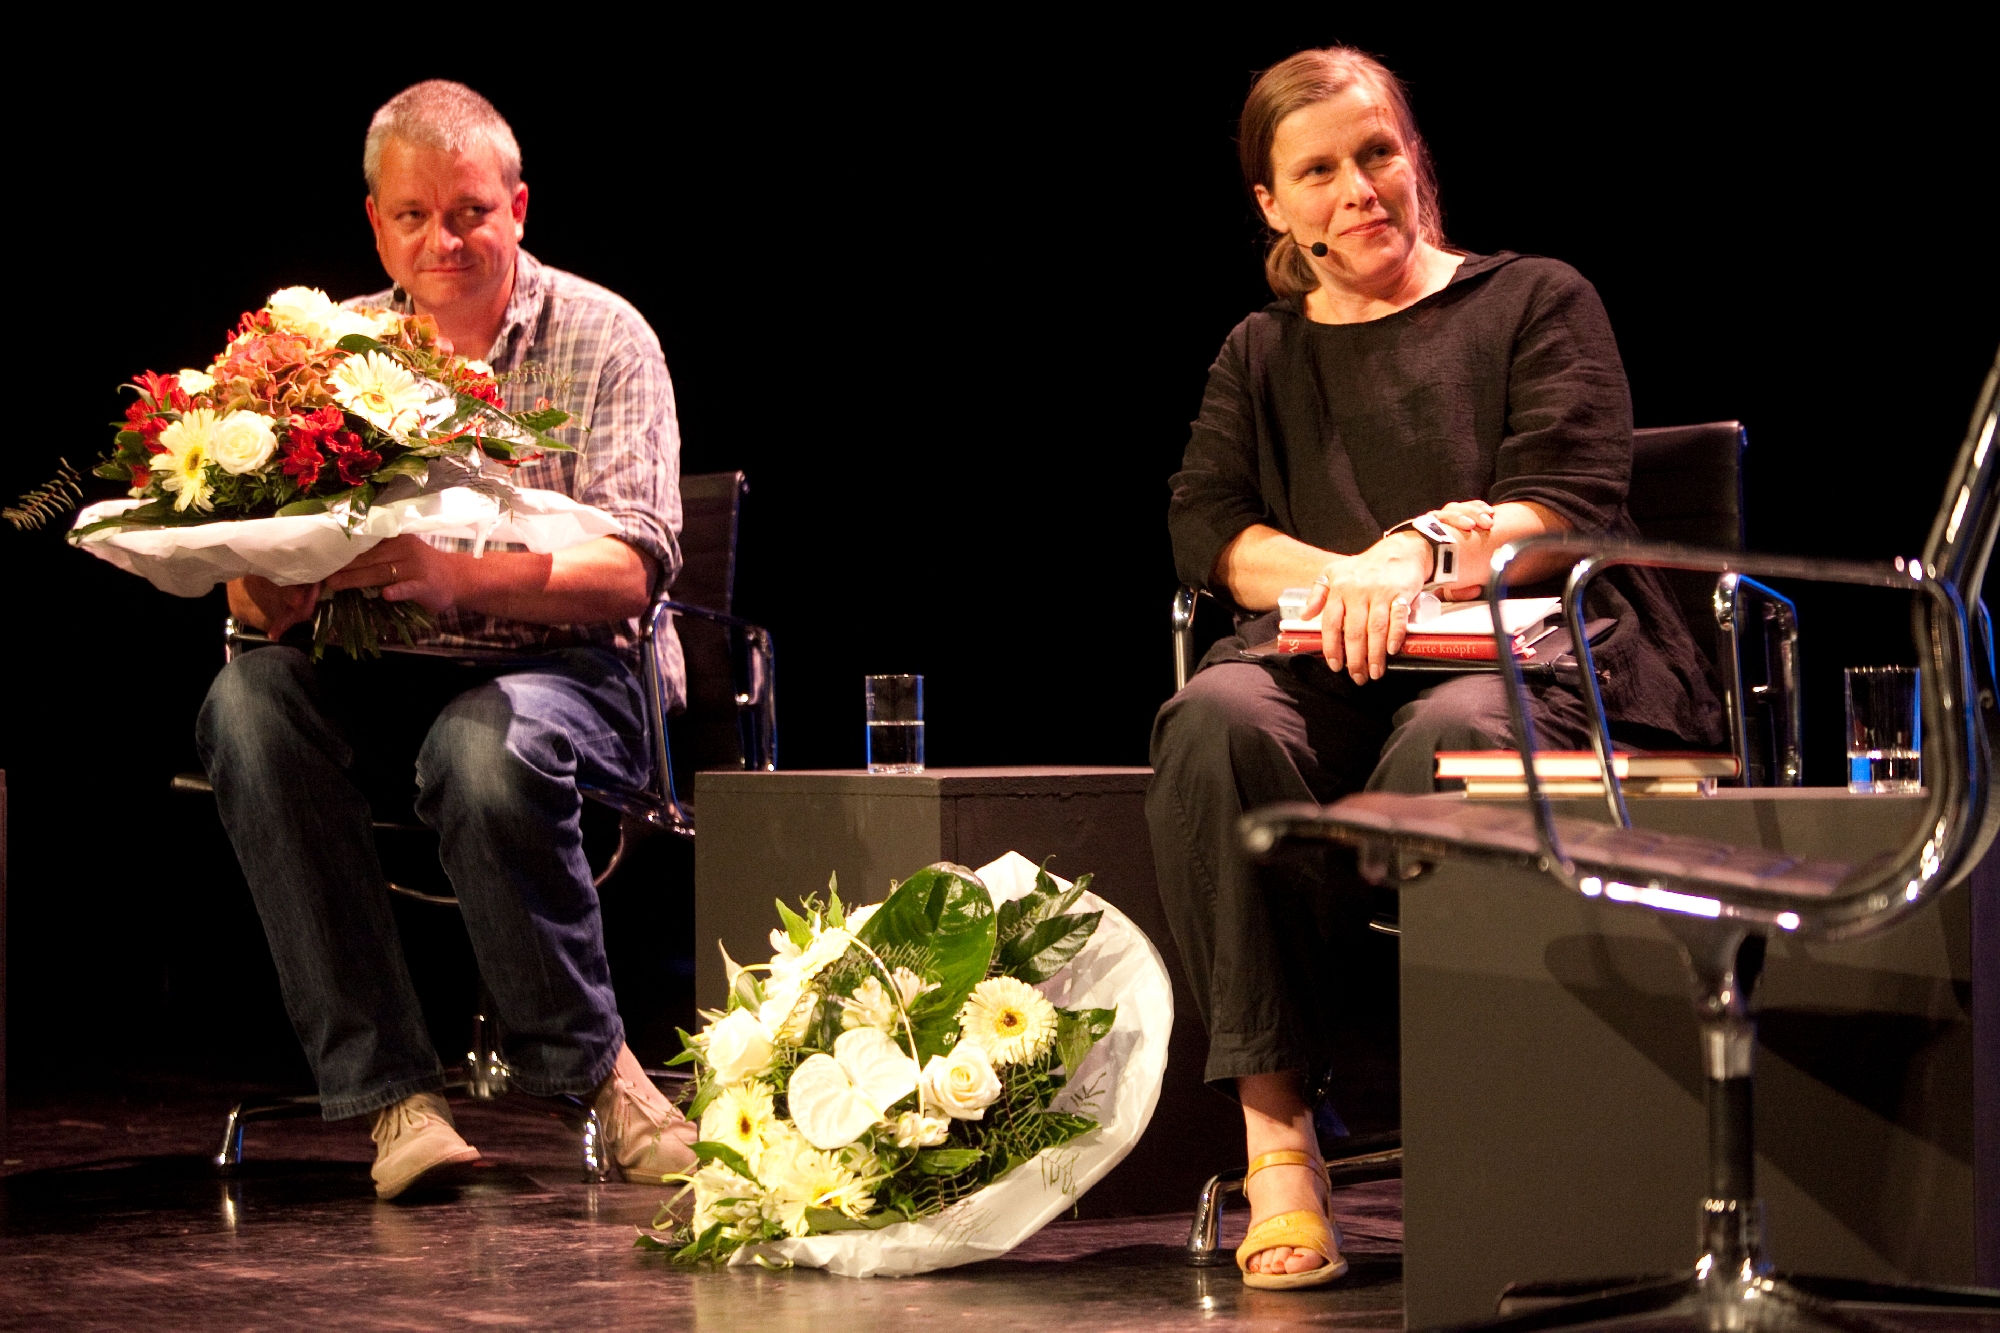 Ulf Stolterfoht und Barbara Köhler sitzen und haben einen Blumenstrauß in der Hand.